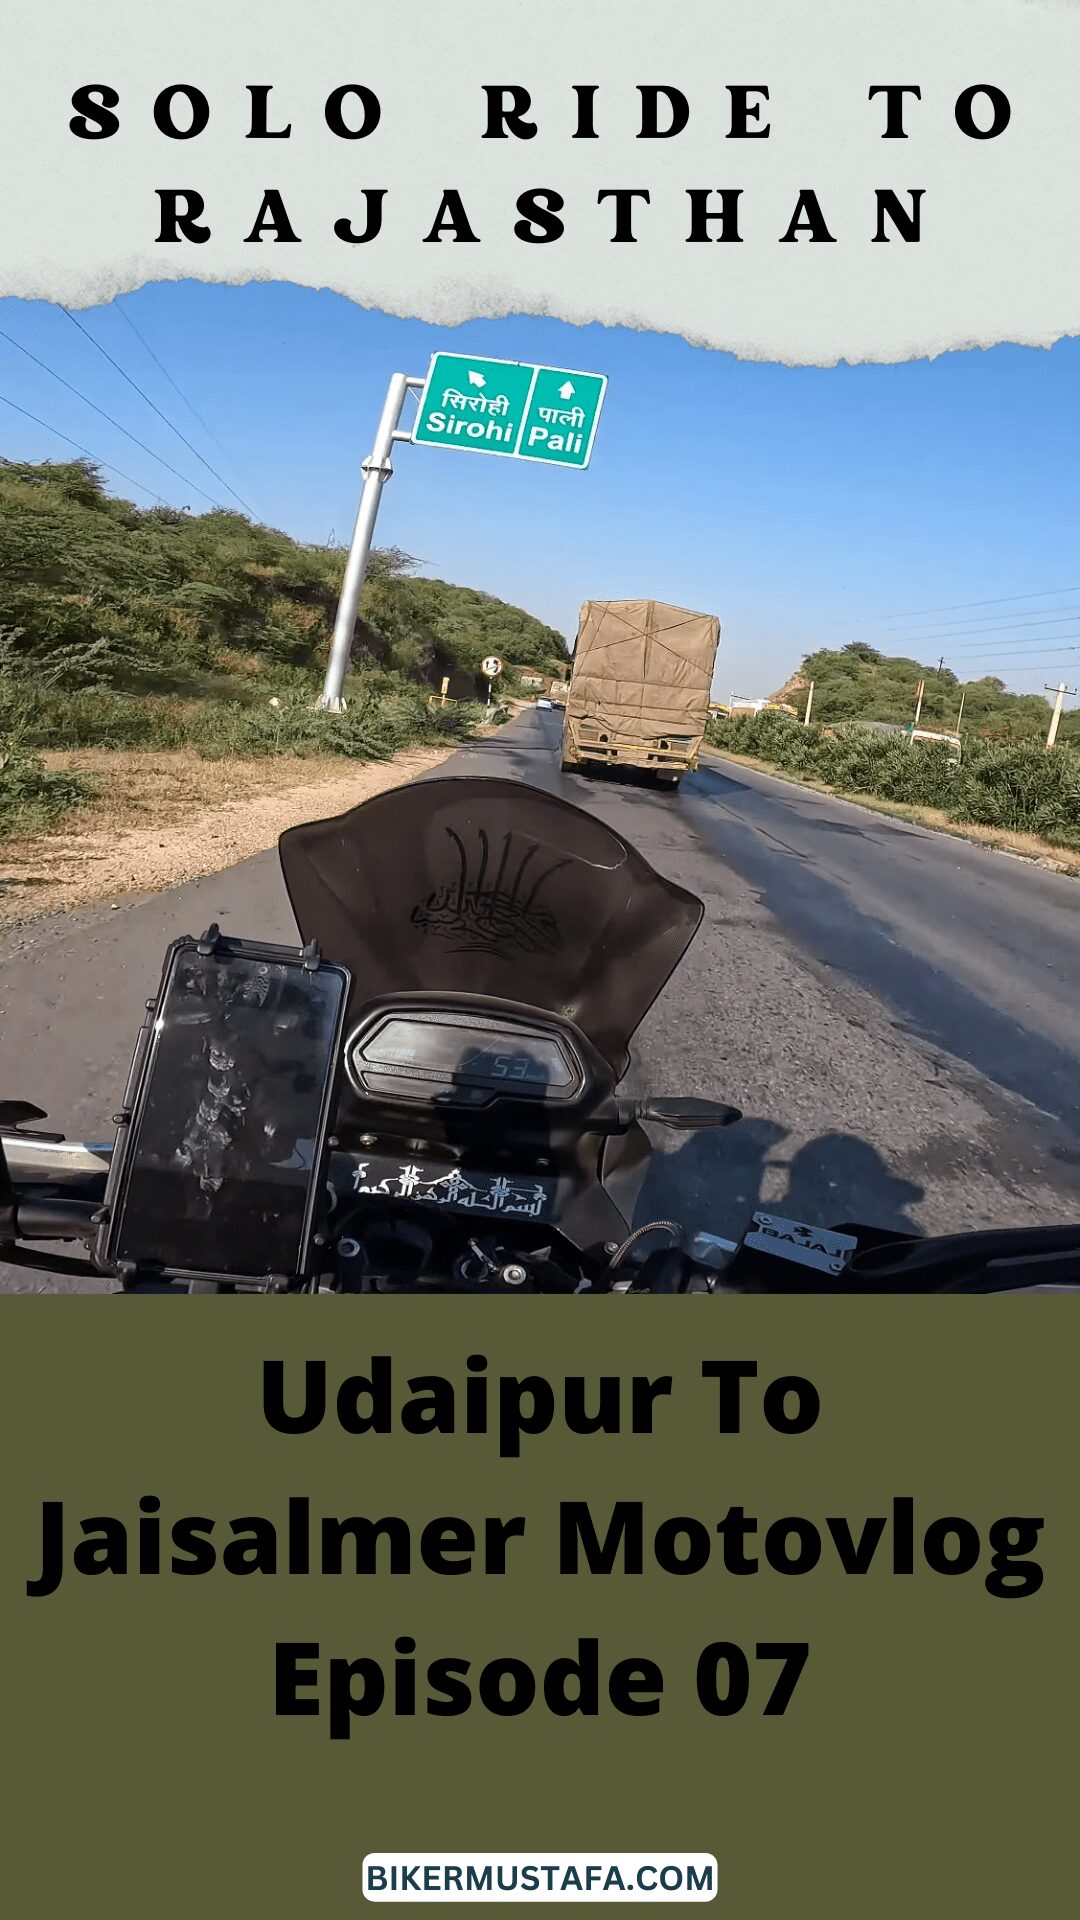 Rajasthan Ride Udaipur To Jaisalmer Motovlog Episode 07